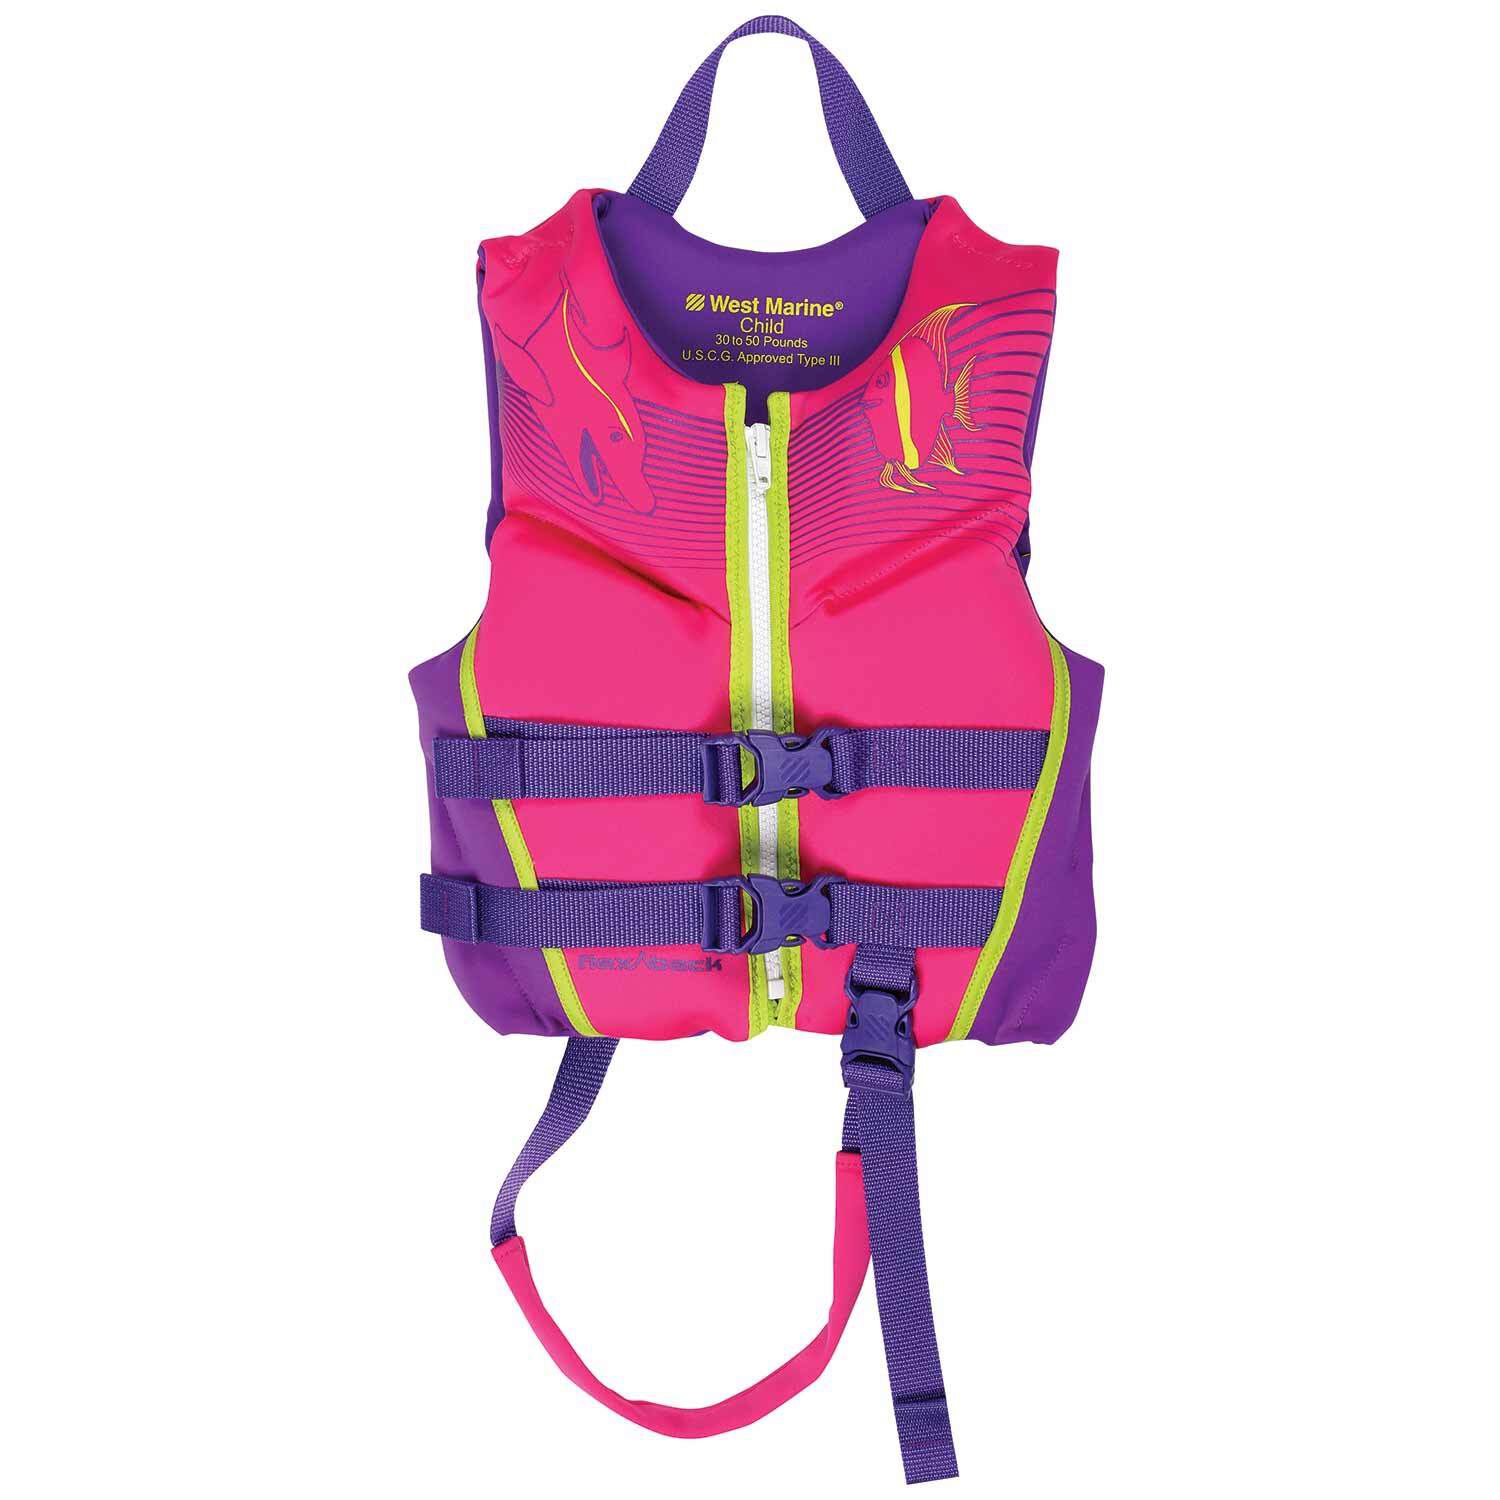 Boy Kids Sports Swimming Floating Swim Aid Vest Buoyancy Safety Life Jacket AV 